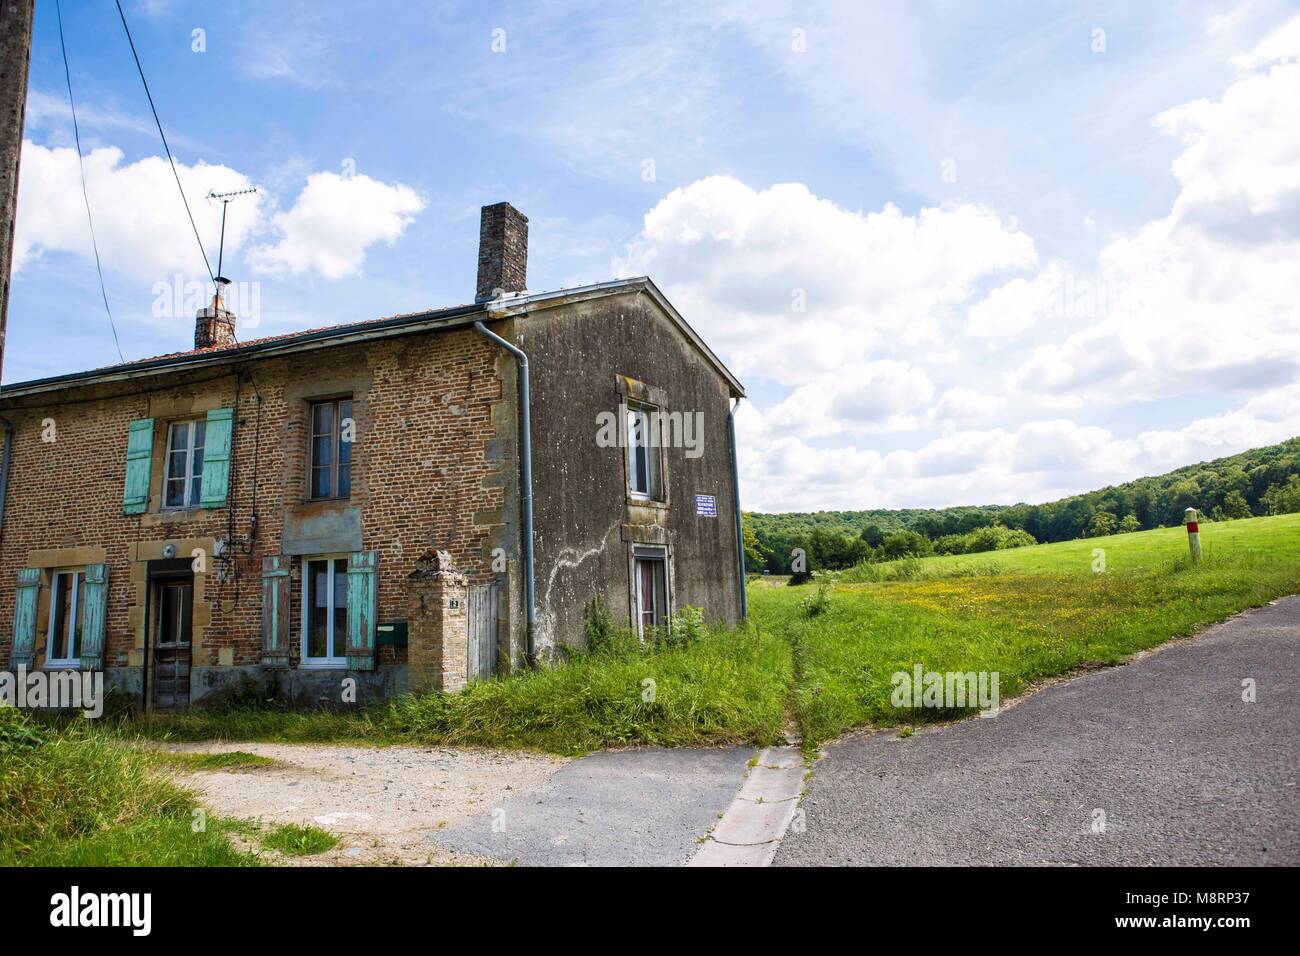 Einsam und fast verlassen steht dieses alte Bauernhaus an der Landstraße zwischen Grandpre und Vouziers im französischen Departement des Ardennes Beau Stock Photo